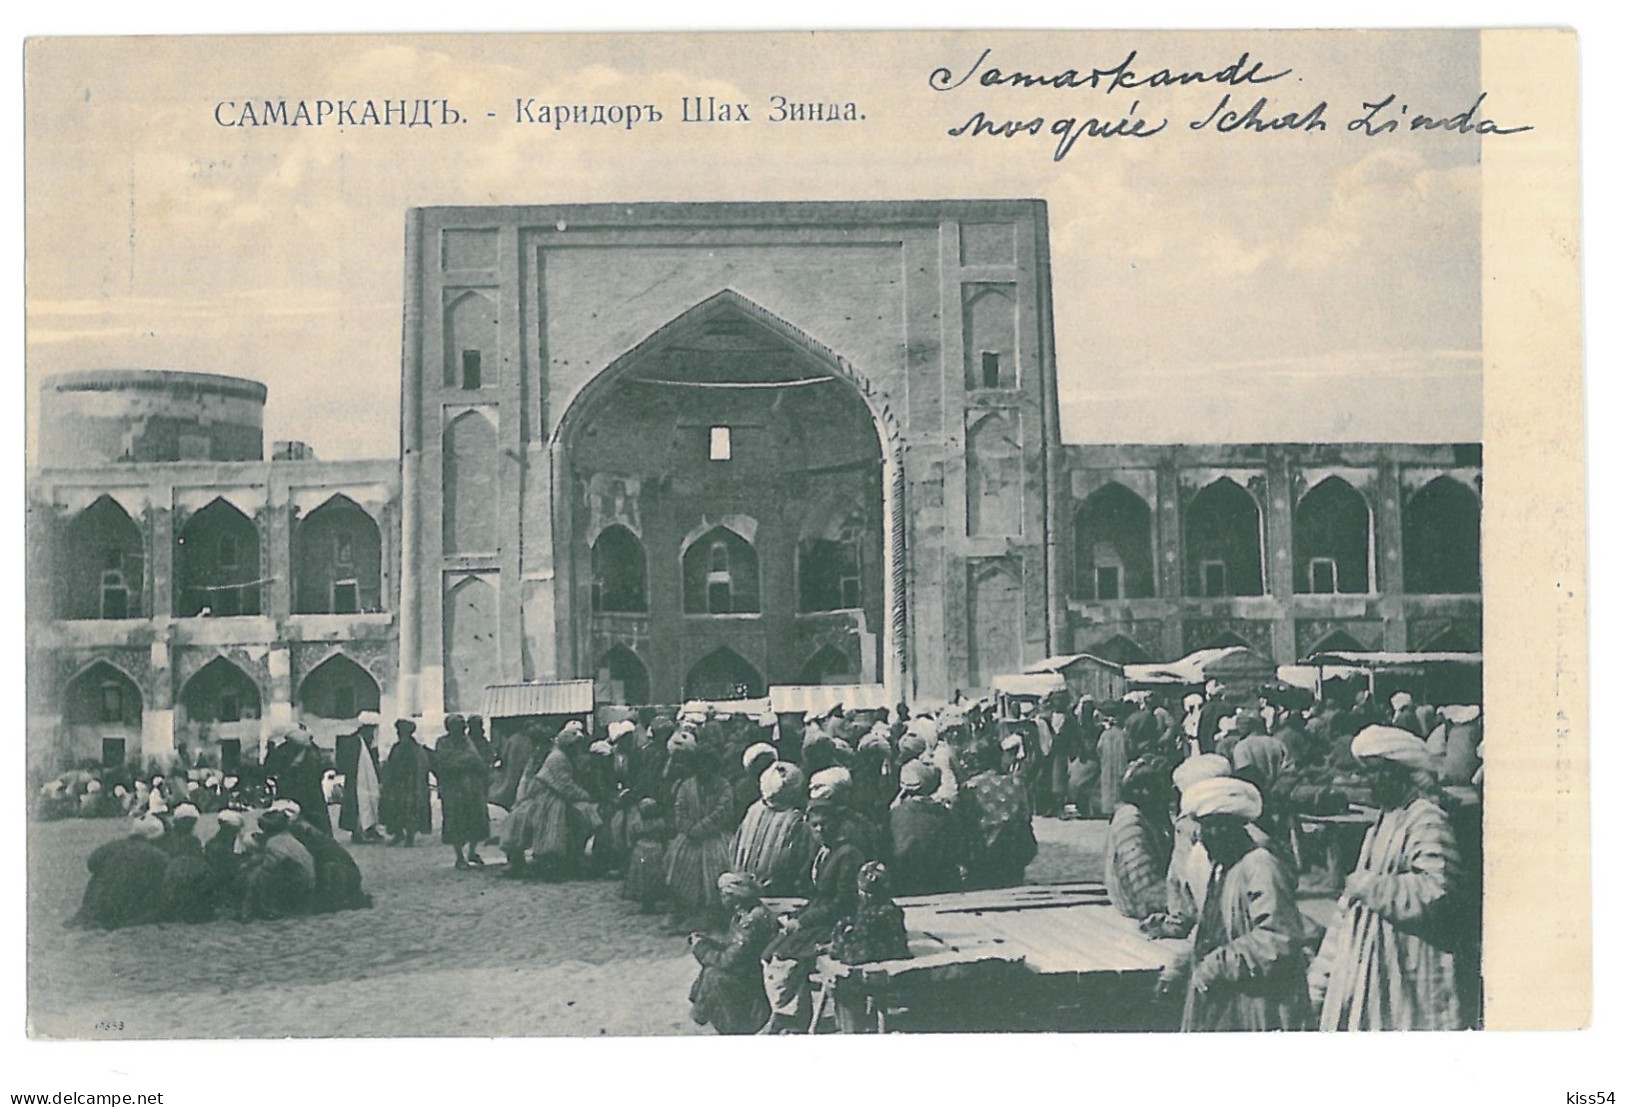 U 24 - 15543 SAMARKAND, Ethnics, Uzbekistan - Old Postcard - Unused - Uzbekistan